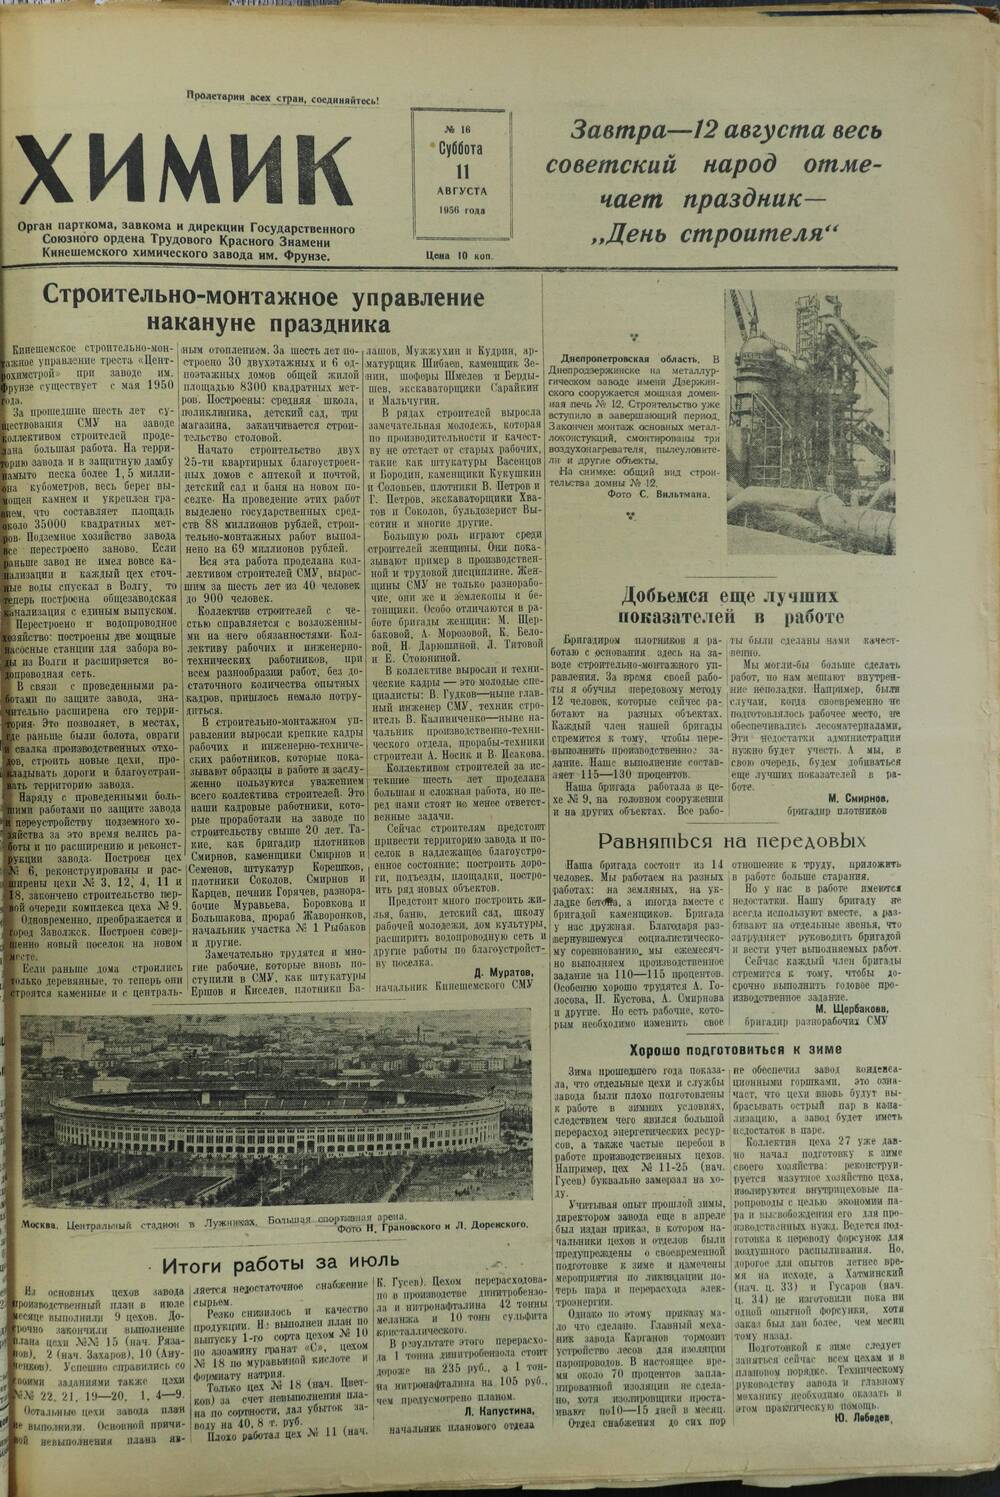 Газета «Химик» № 16 от 11 августа 1956 года.